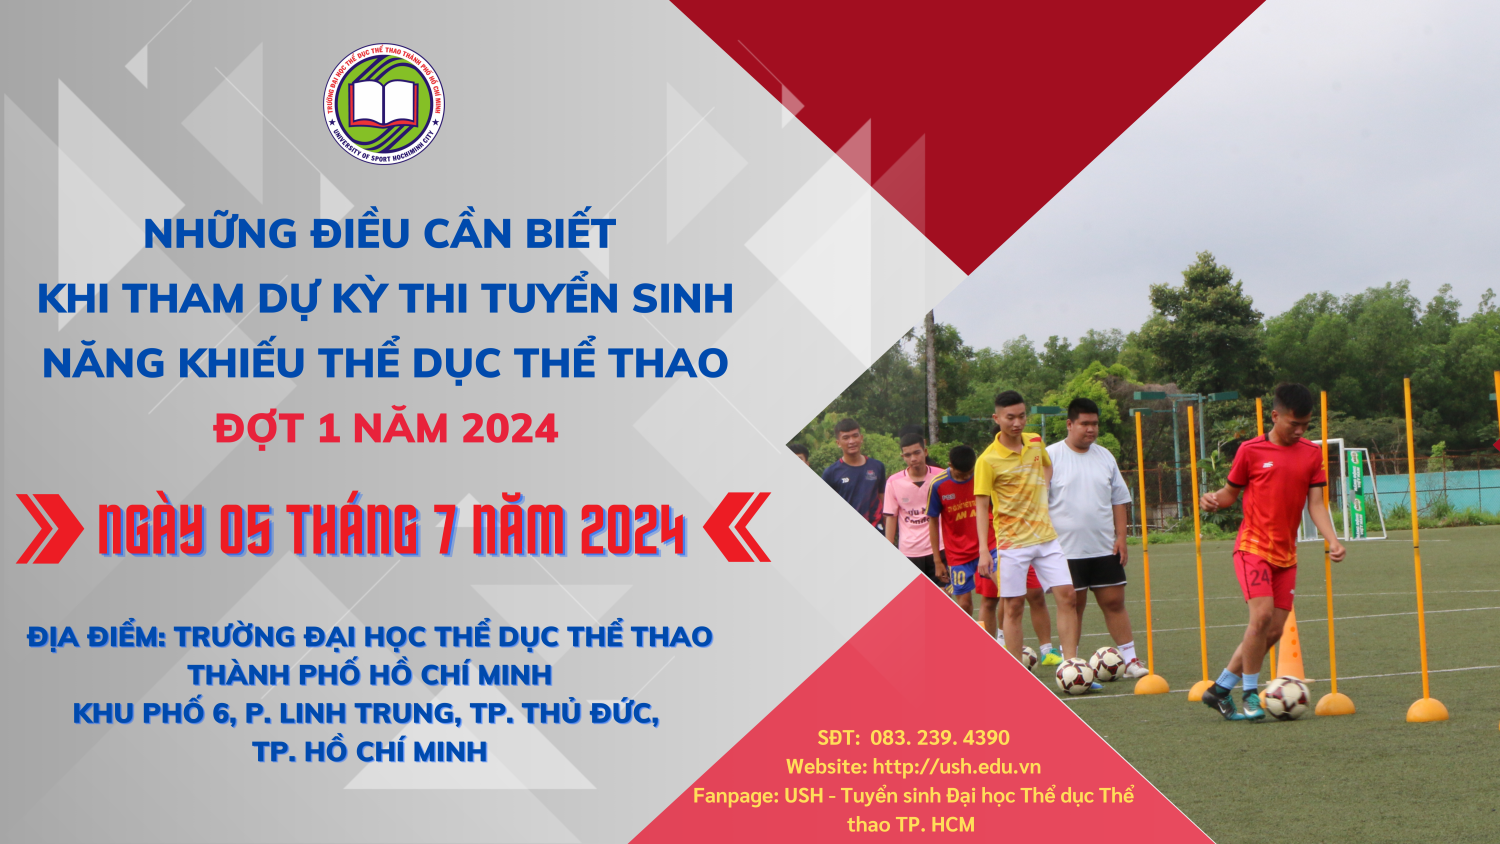 Trường Đại học Thể dục thể thao Thành phố Hồ Chí Minh: Những điều thí sinh cần biết khi tham gia tuyển sinh đợt 1 năm 2024 - Ảnh 1.